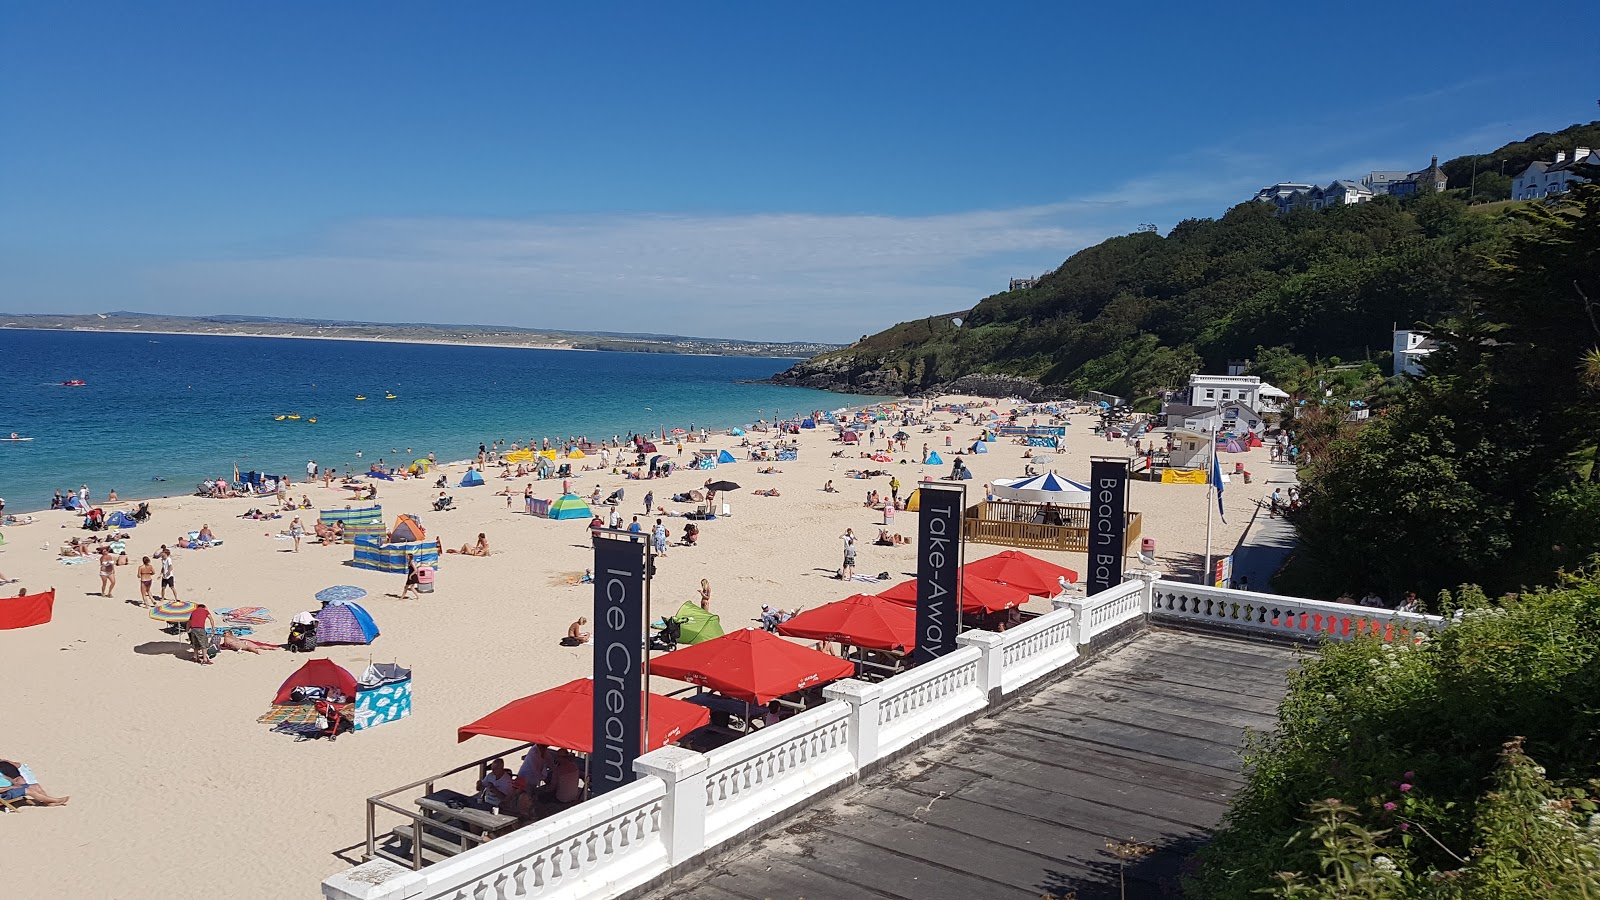 Foto af Porthminster strand - populært sted blandt afslapningskendere